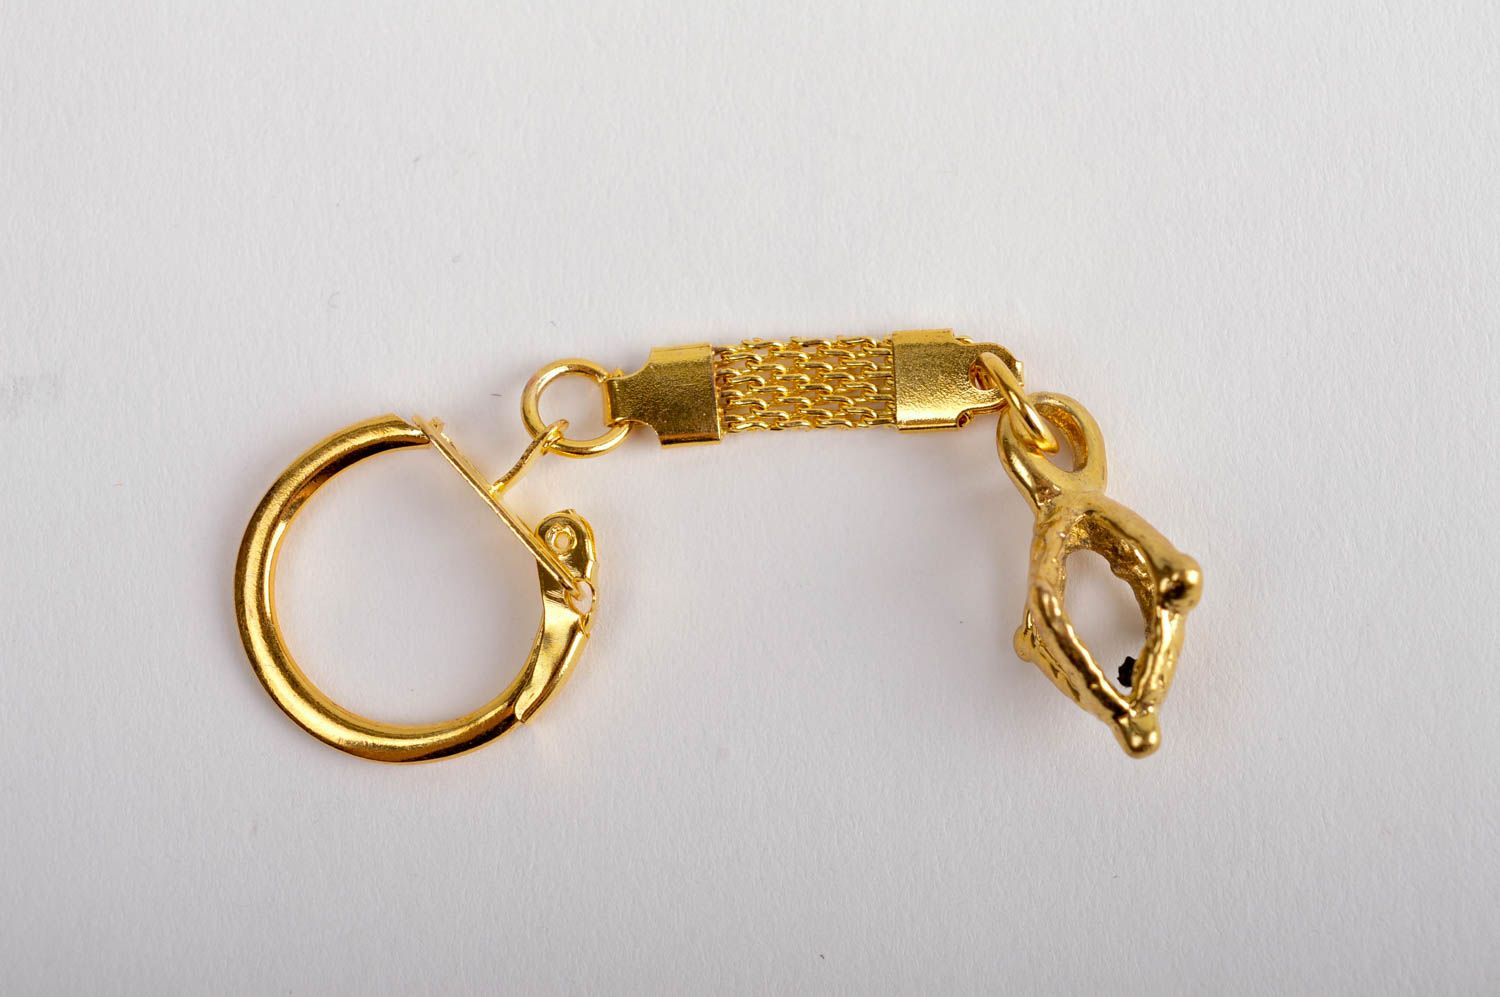 Llavero metálico de color oro artesanal regalo para amigos accesorio para llaves foto 2